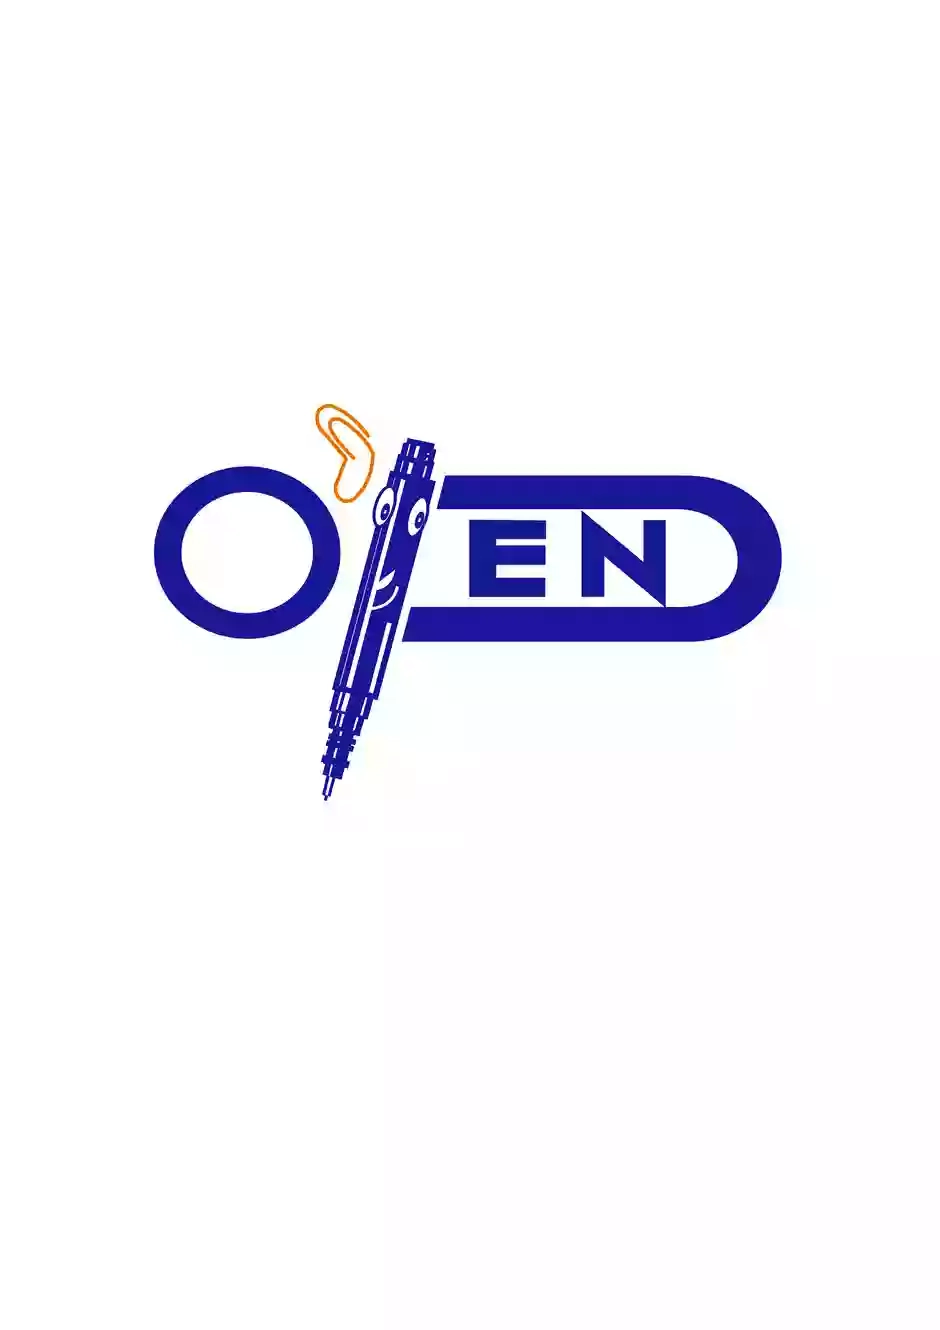 O'Pen Office Solutions Ltd